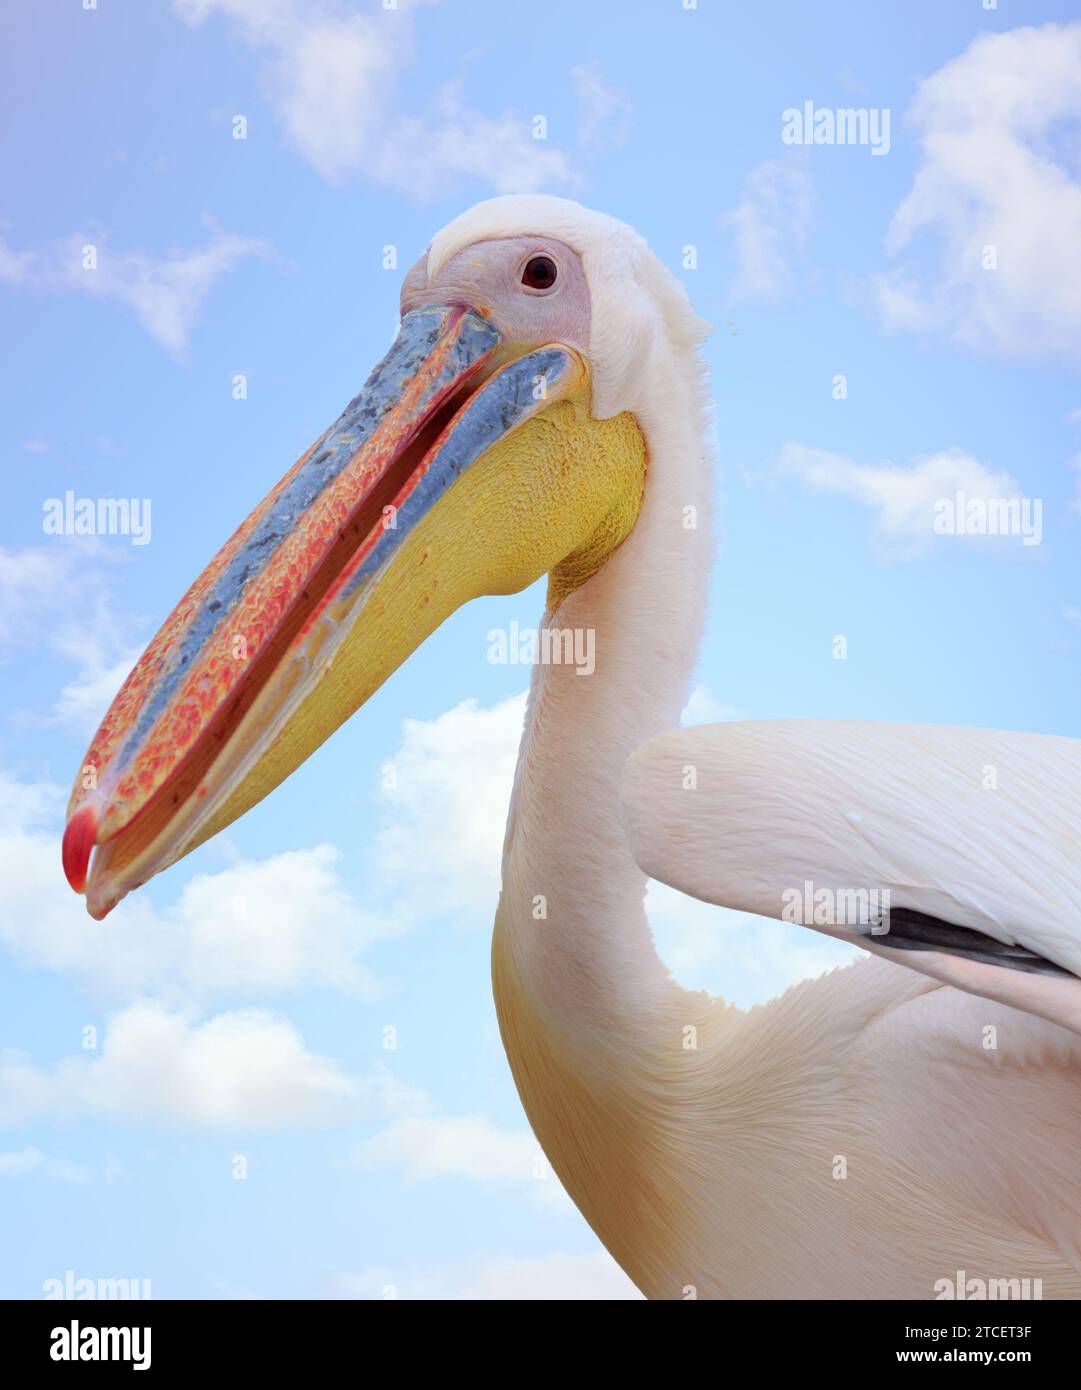 Nahaufnahme des großen weißen Pelikans (Pelecanus onocrotalus) Kopf vor einem natürlichen Hintergrund mit klarem Himmel - Fokus auf dem Auge, Schnabelspitze nicht scharf Stockfoto